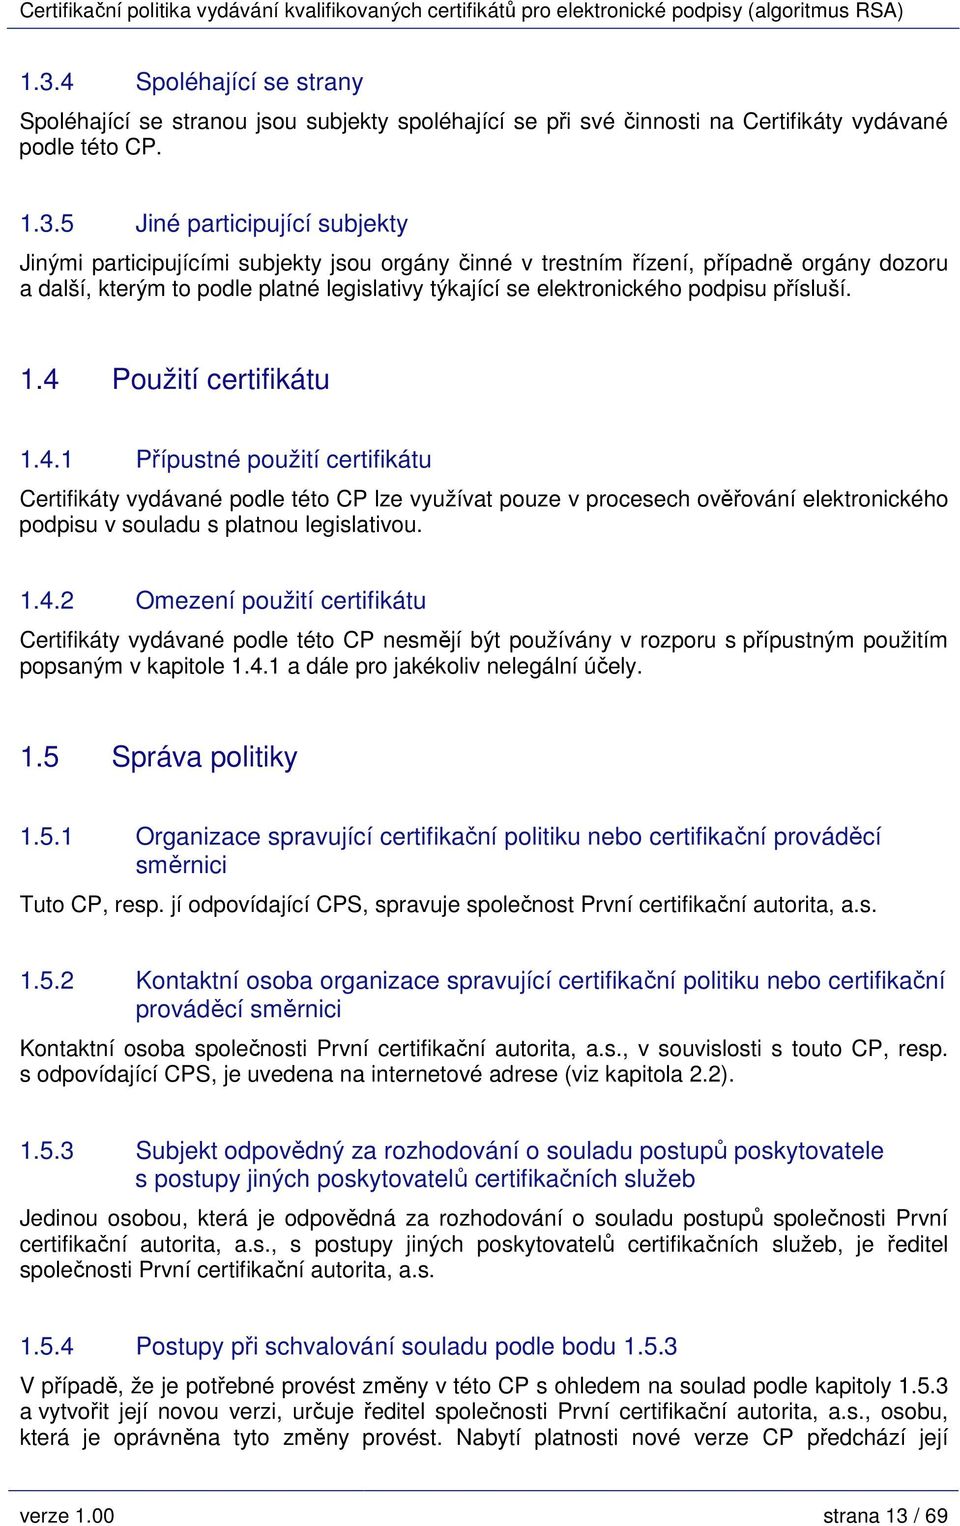 Použití certifikátu 1.4.1 Přípustné použití certifikátu Certifikáty vydávané podle této CP lze využívat pouze v procesech ověřování elektronického podpisu v souladu s platnou legislativou. 1.4.2 Omezení použití certifikátu Certifikáty vydávané podle této CP nesmějí být používány v rozporu s přípustným použitím popsaným v kapitole 1.